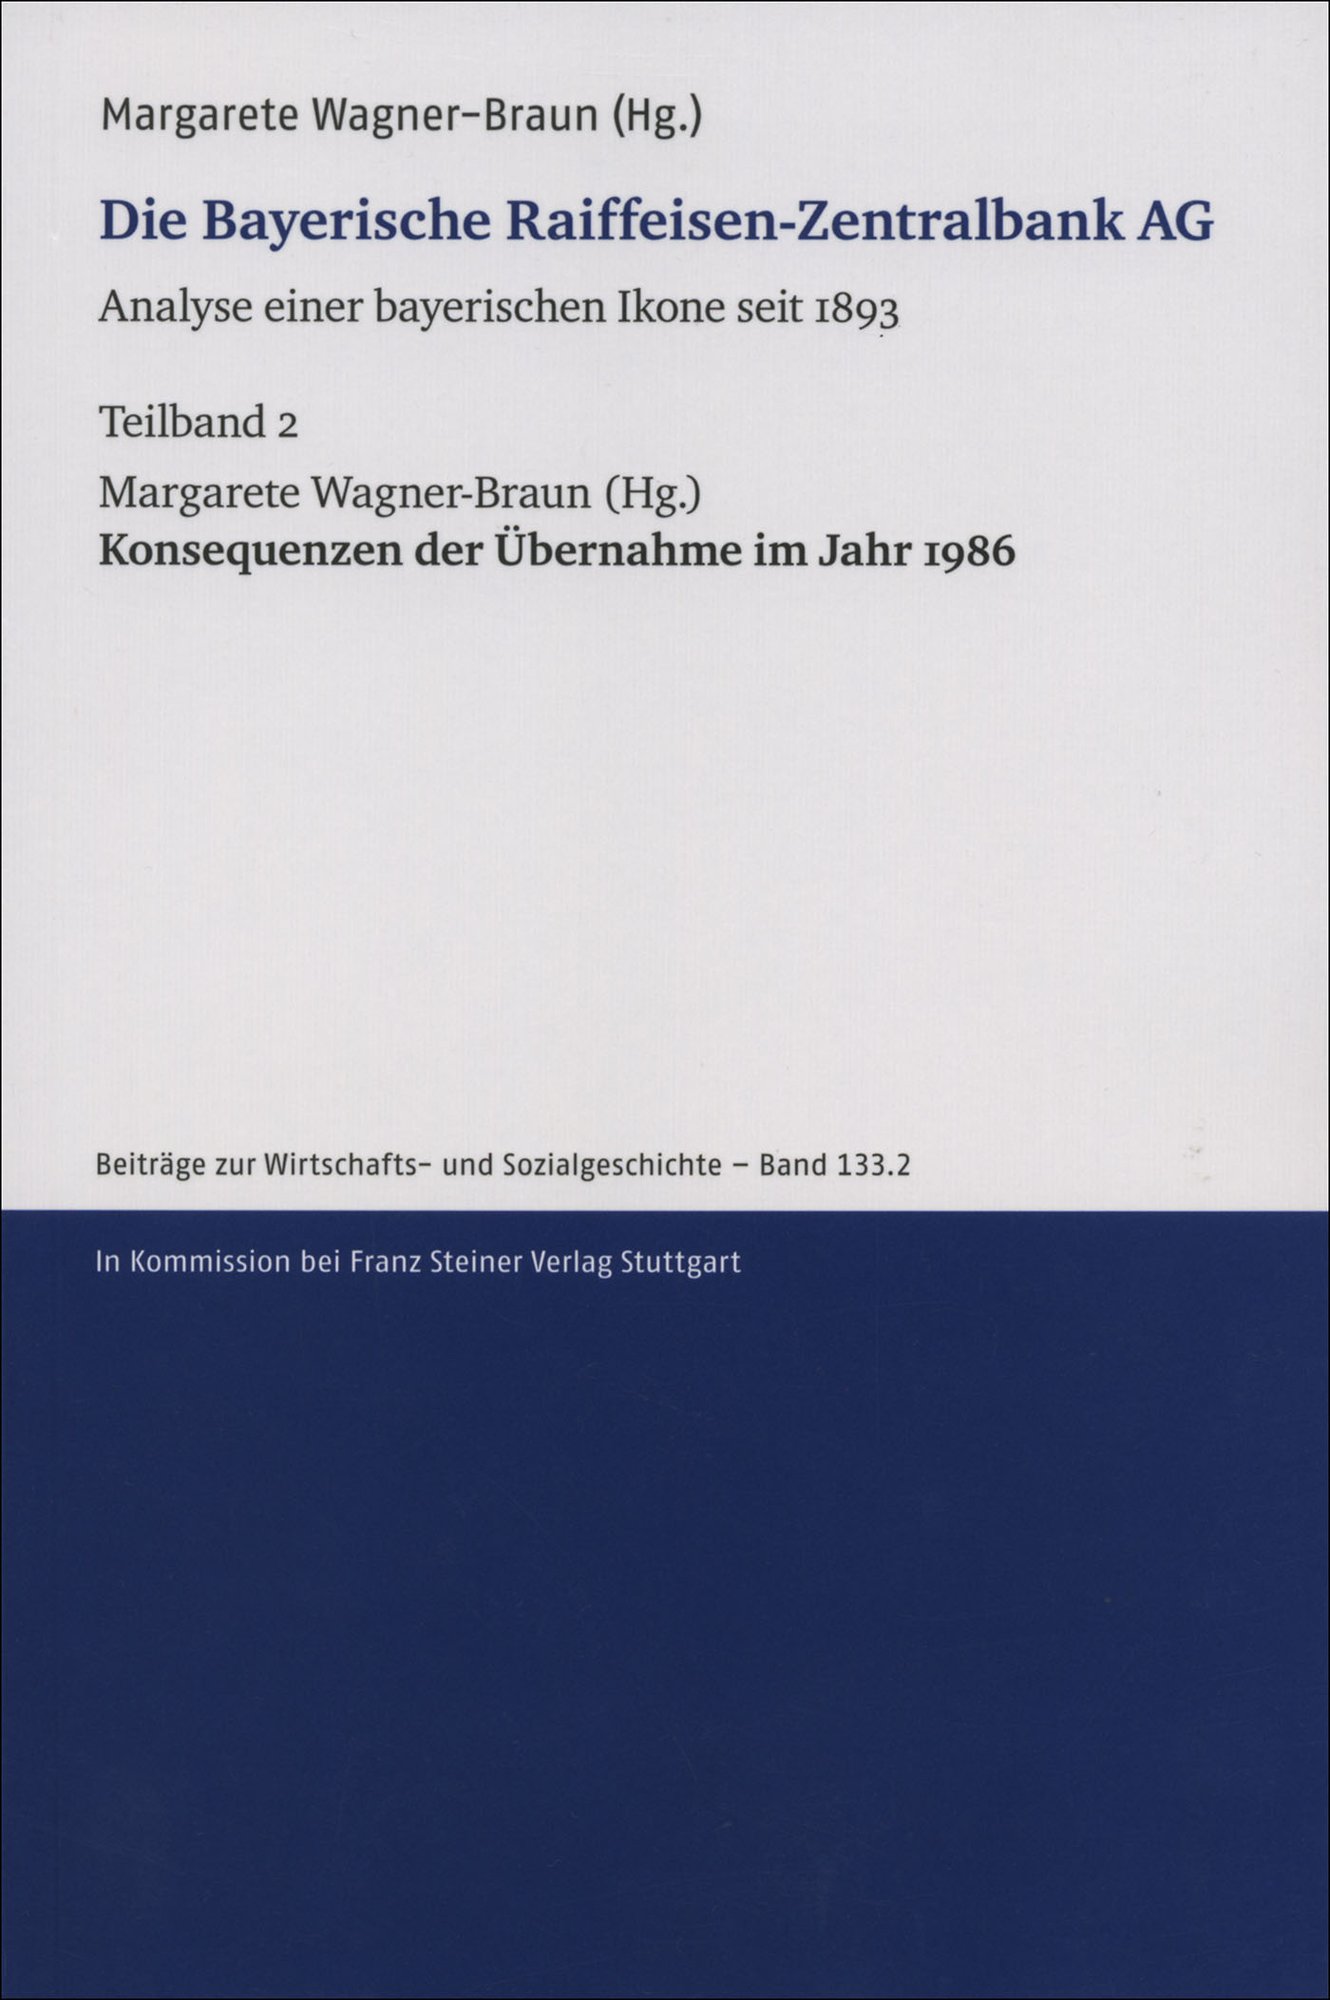 Die Bayerische Raiffeisen-Zentralbank AG. Analyse einer bayerischen Ikone seit 1893. Teilband 2